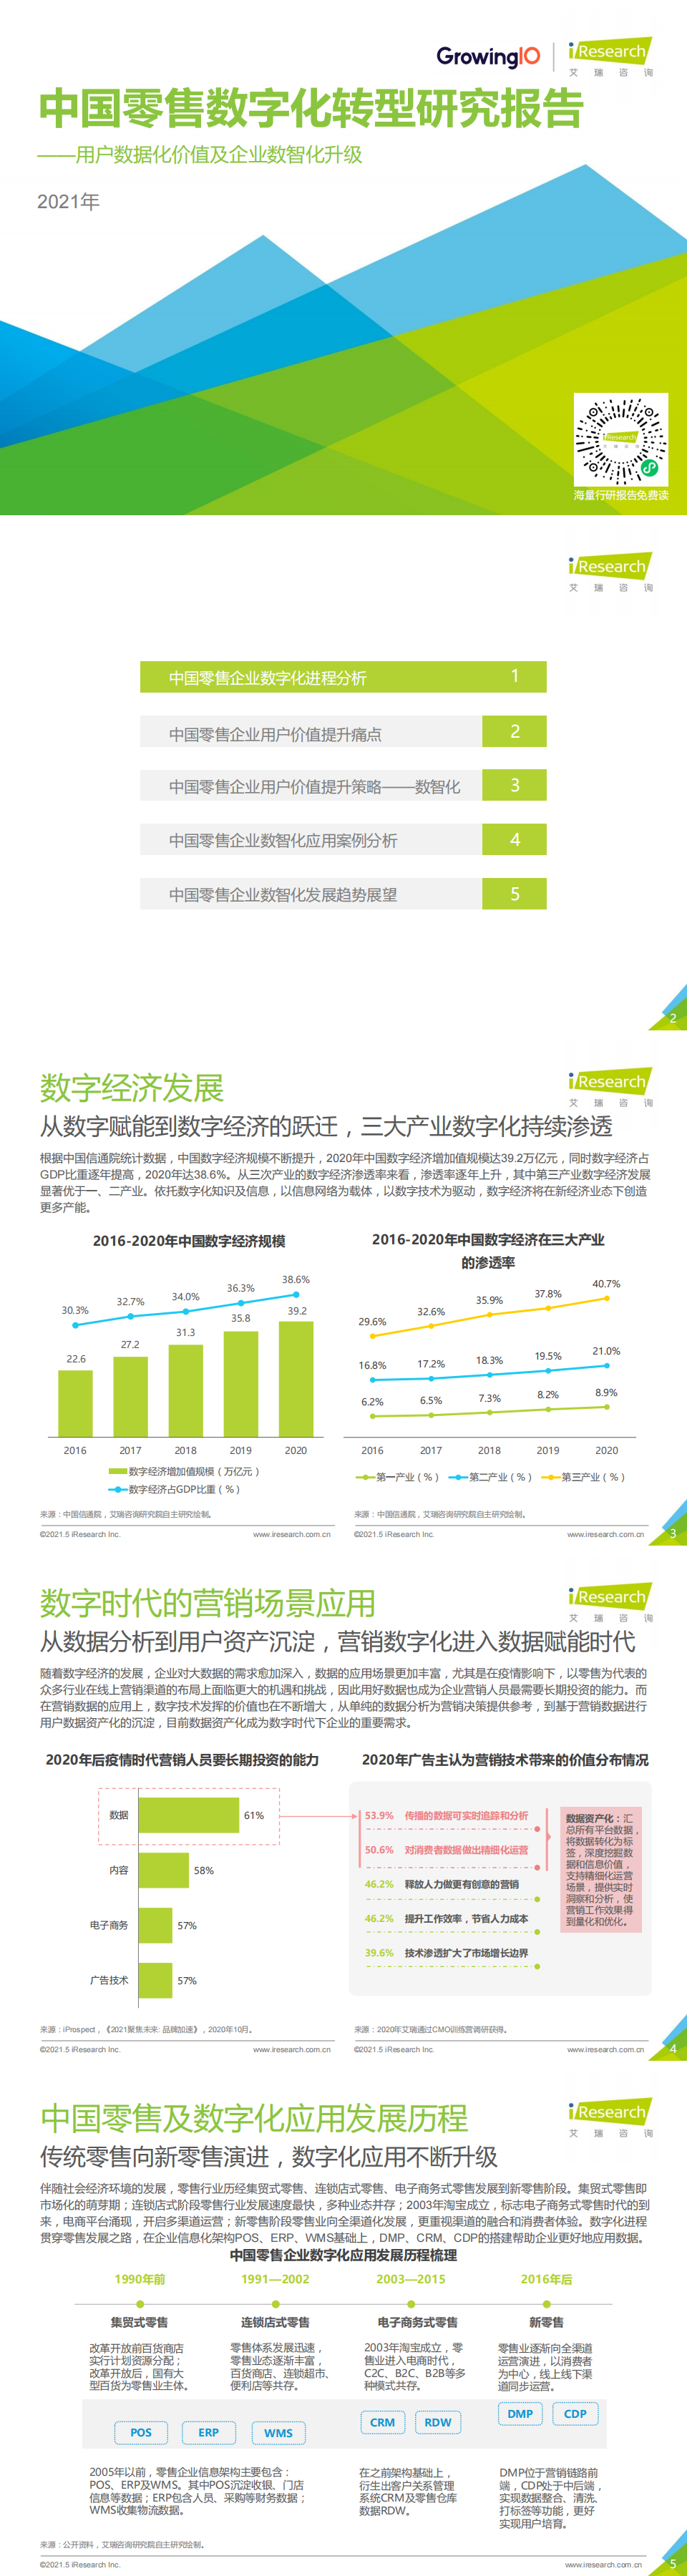 艾瑞咨询：2021年中国零售数字化转型研究报告_0.png